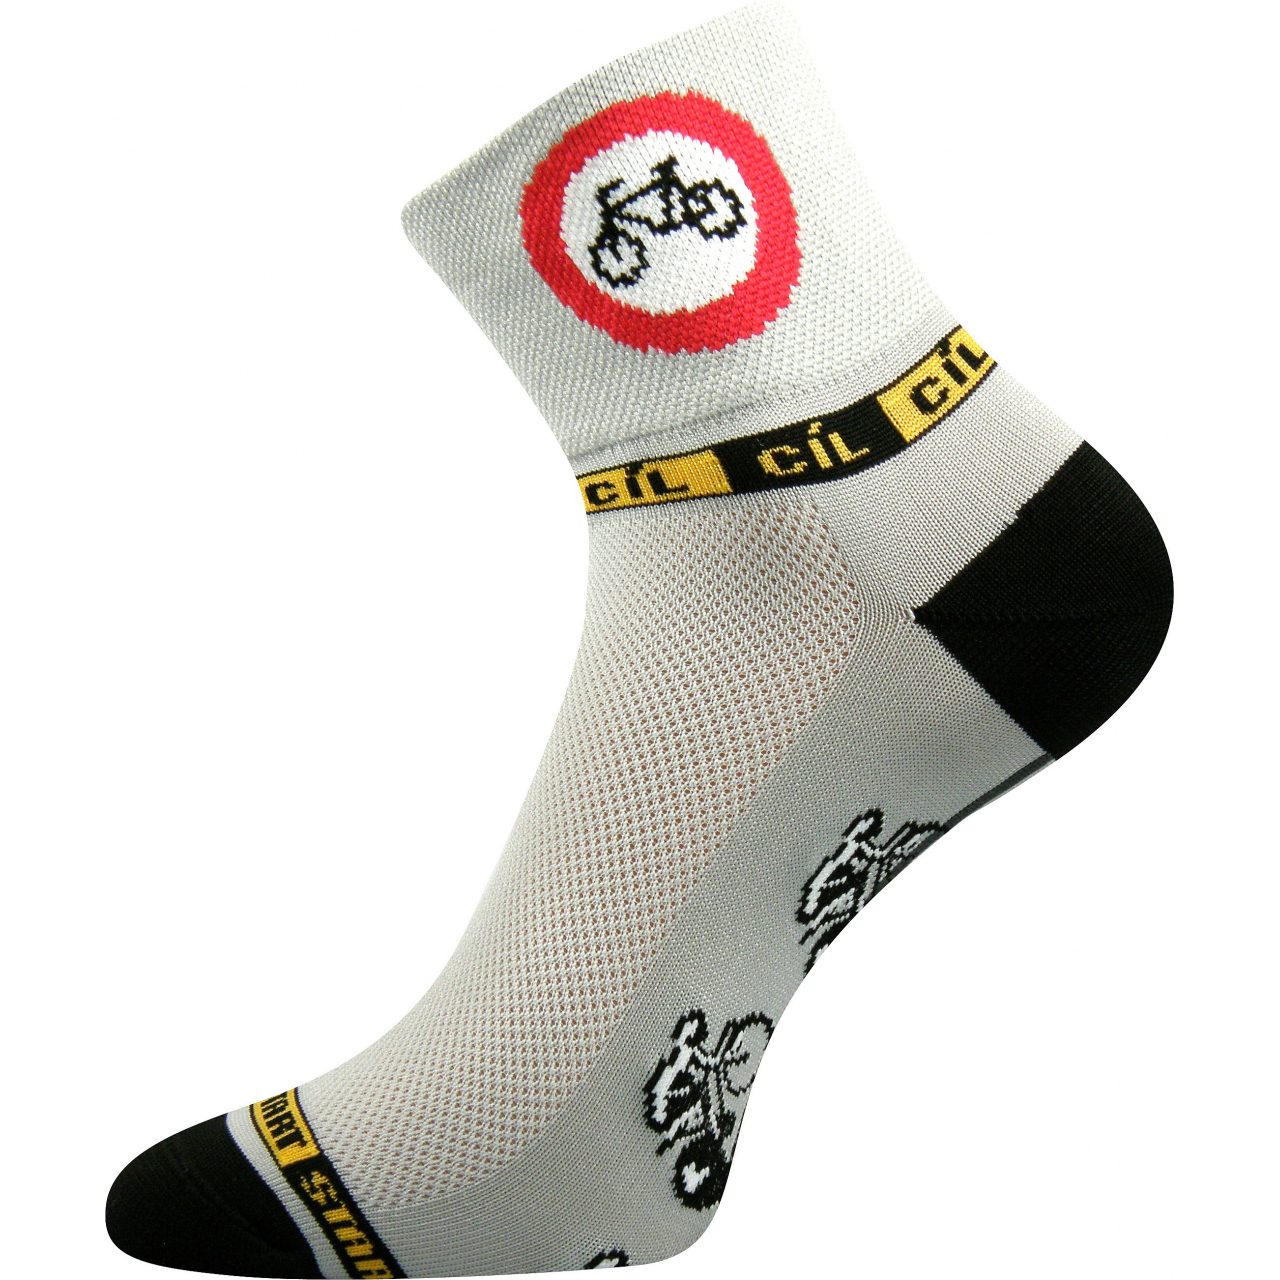 Ponožky sportovní unisex Voxx Ralf X Kolo - šedé-černé, 39-42